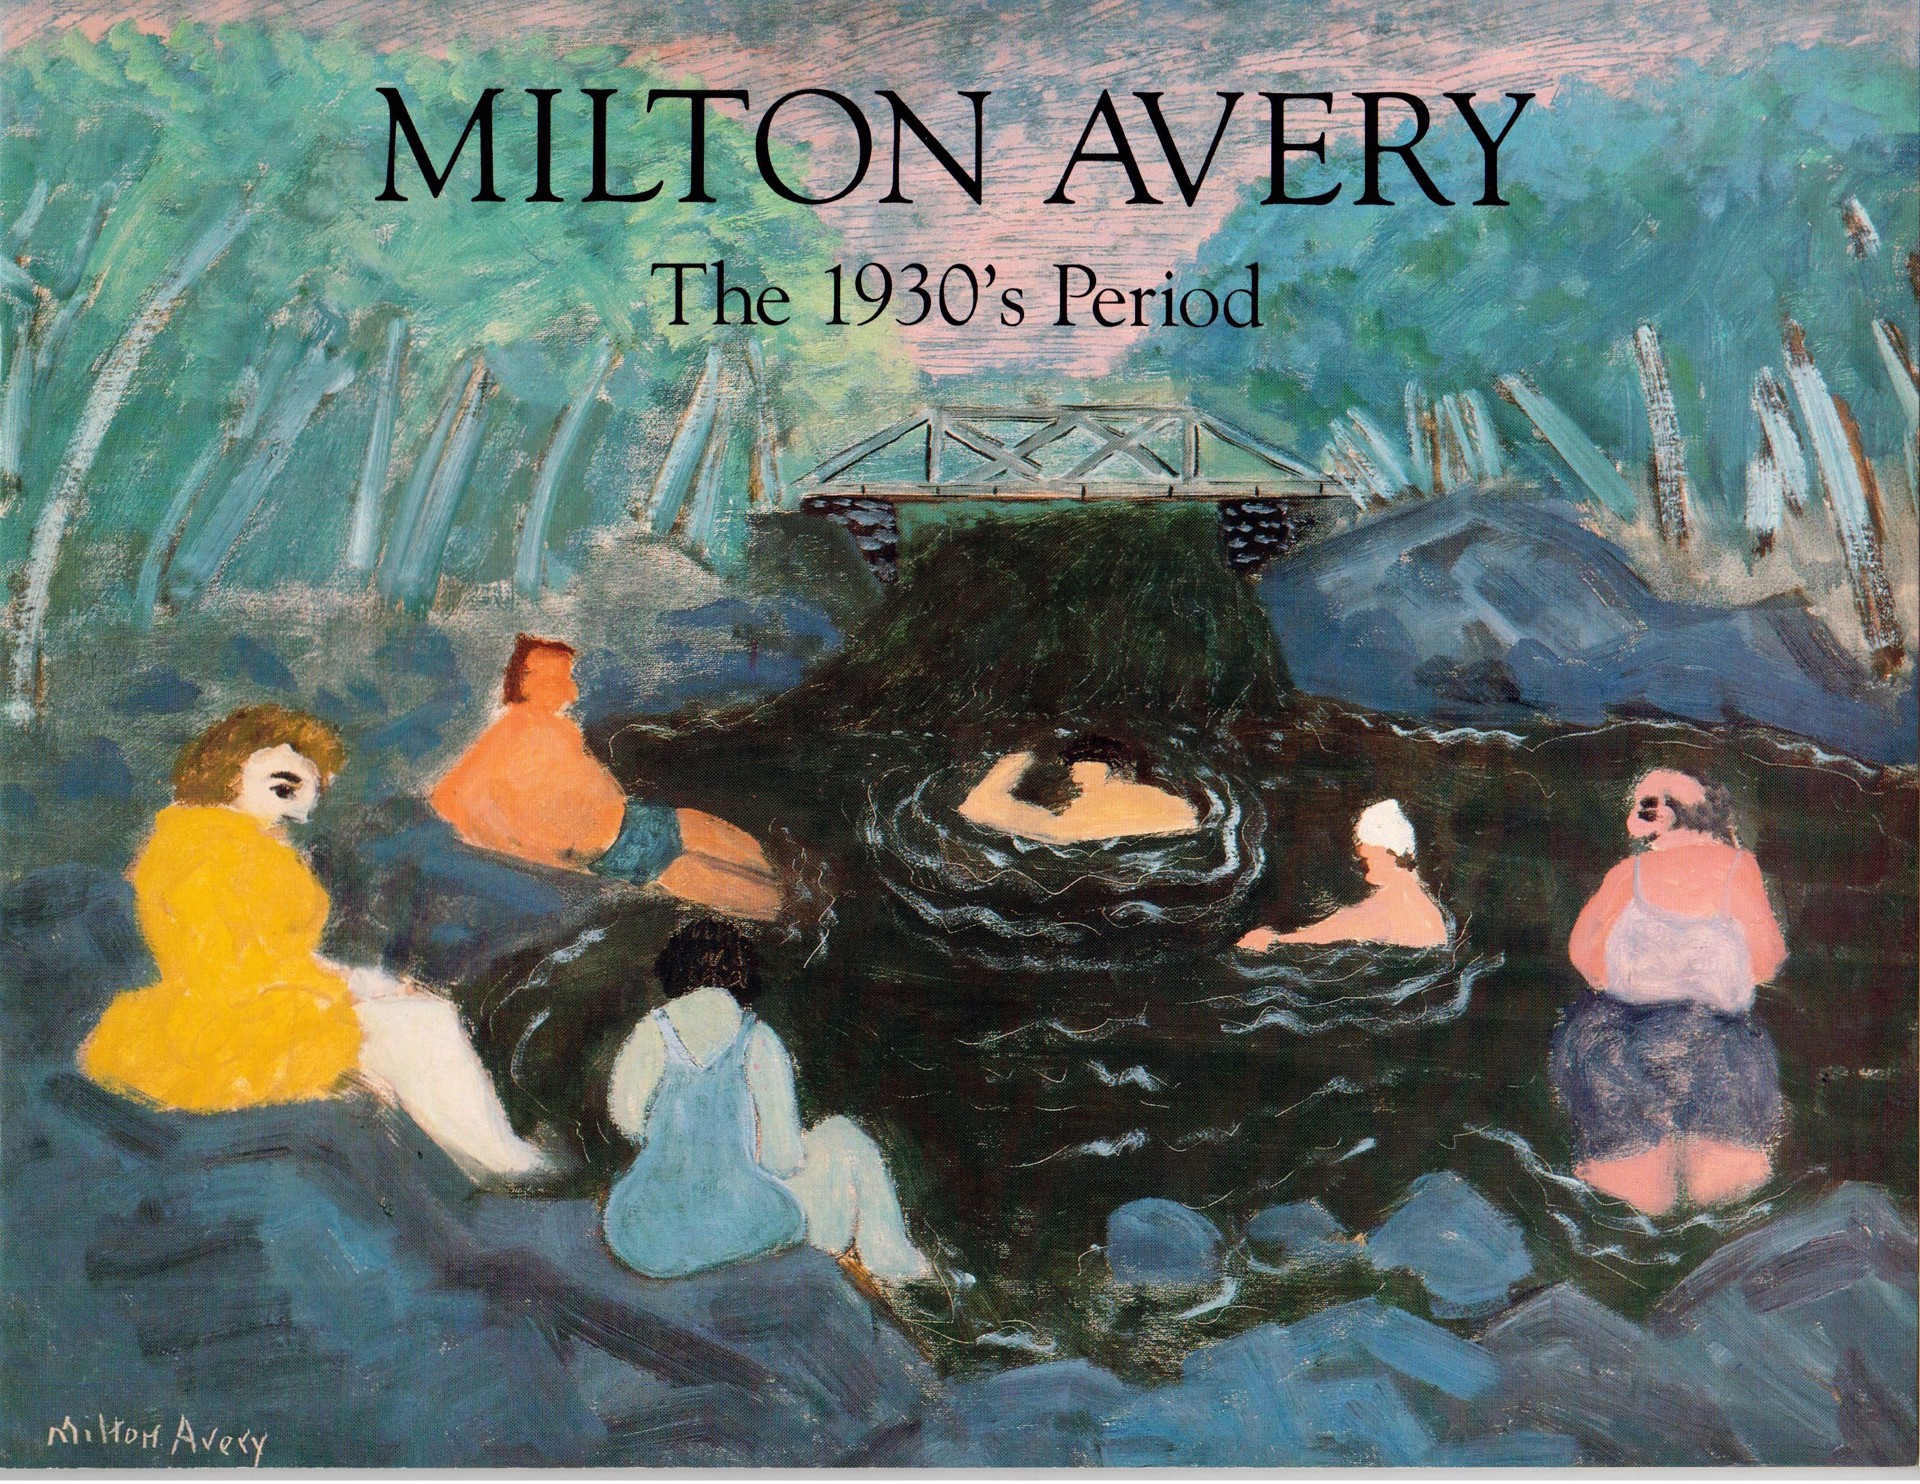 Milton Avery: The 1930s Period by Milton Avery